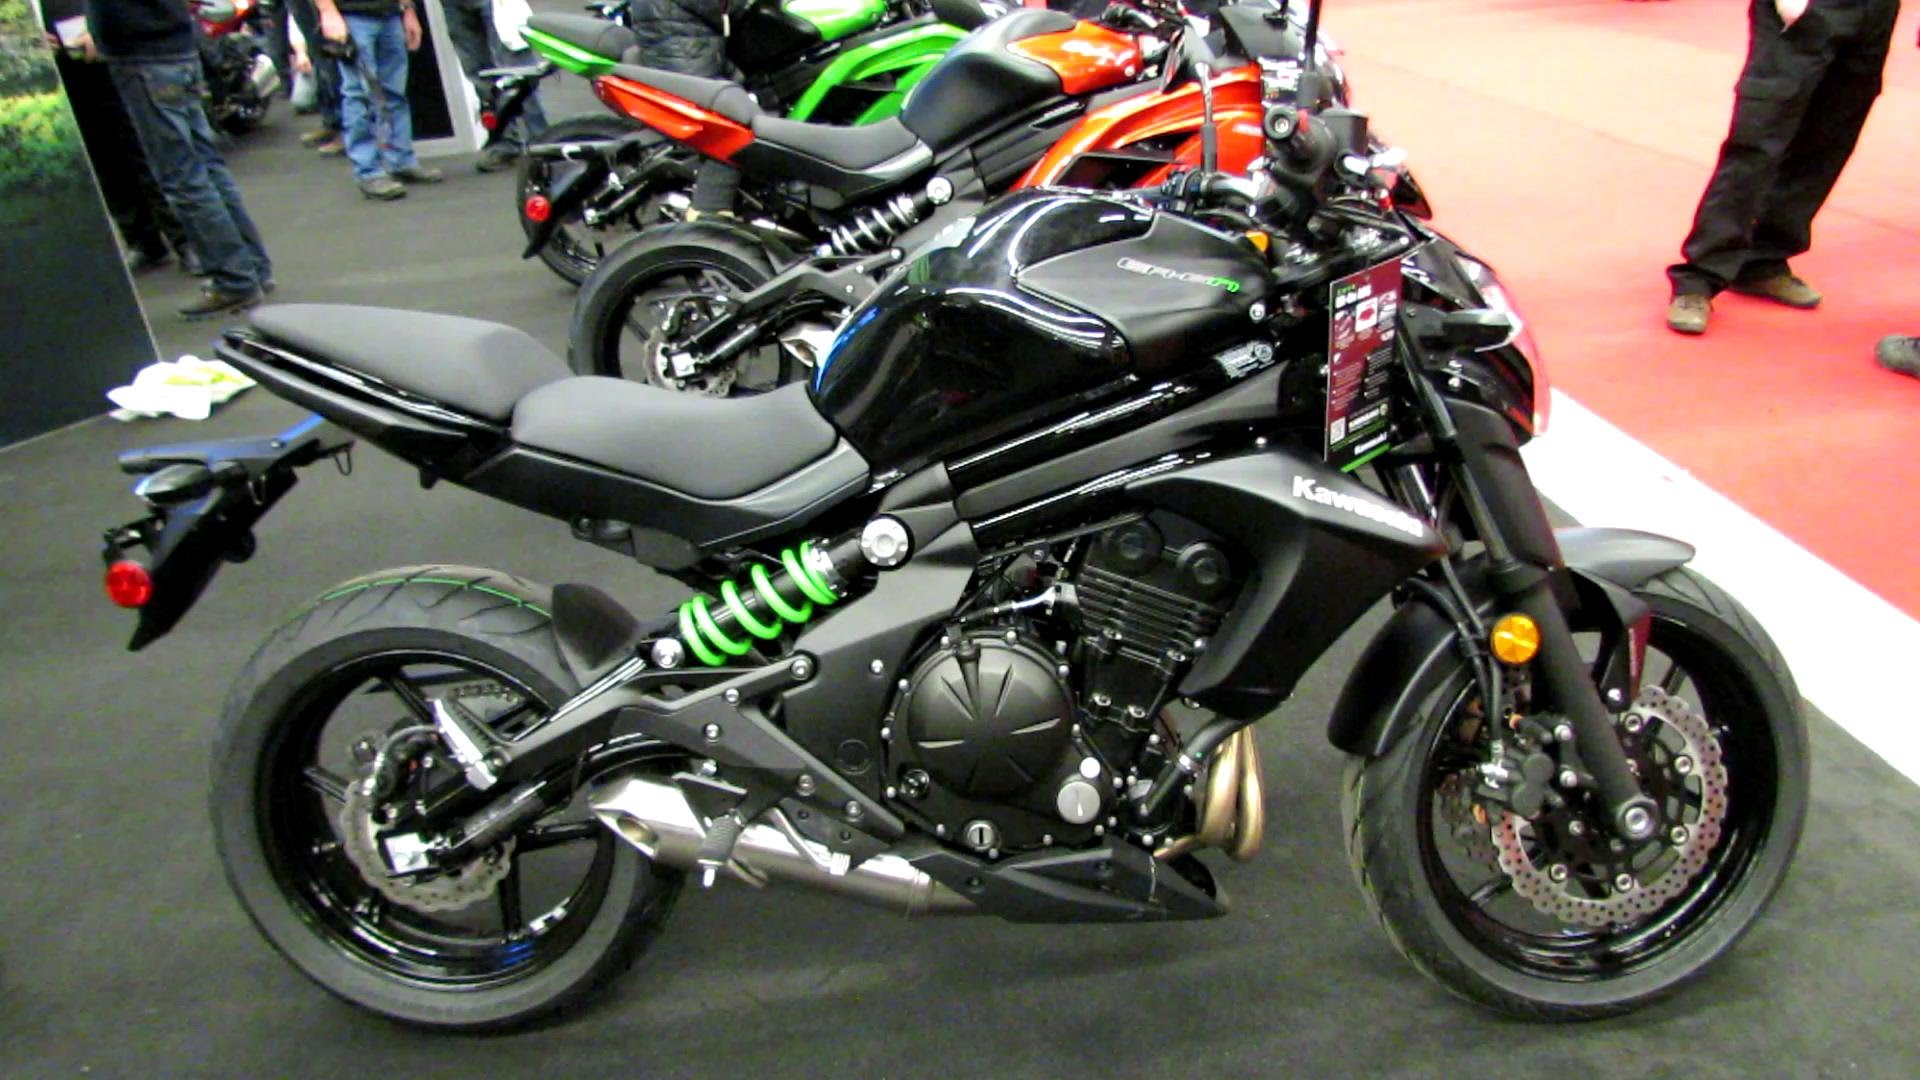 Мотоцикл кавасаки er-6n - прекрасные характеристики для своего класса